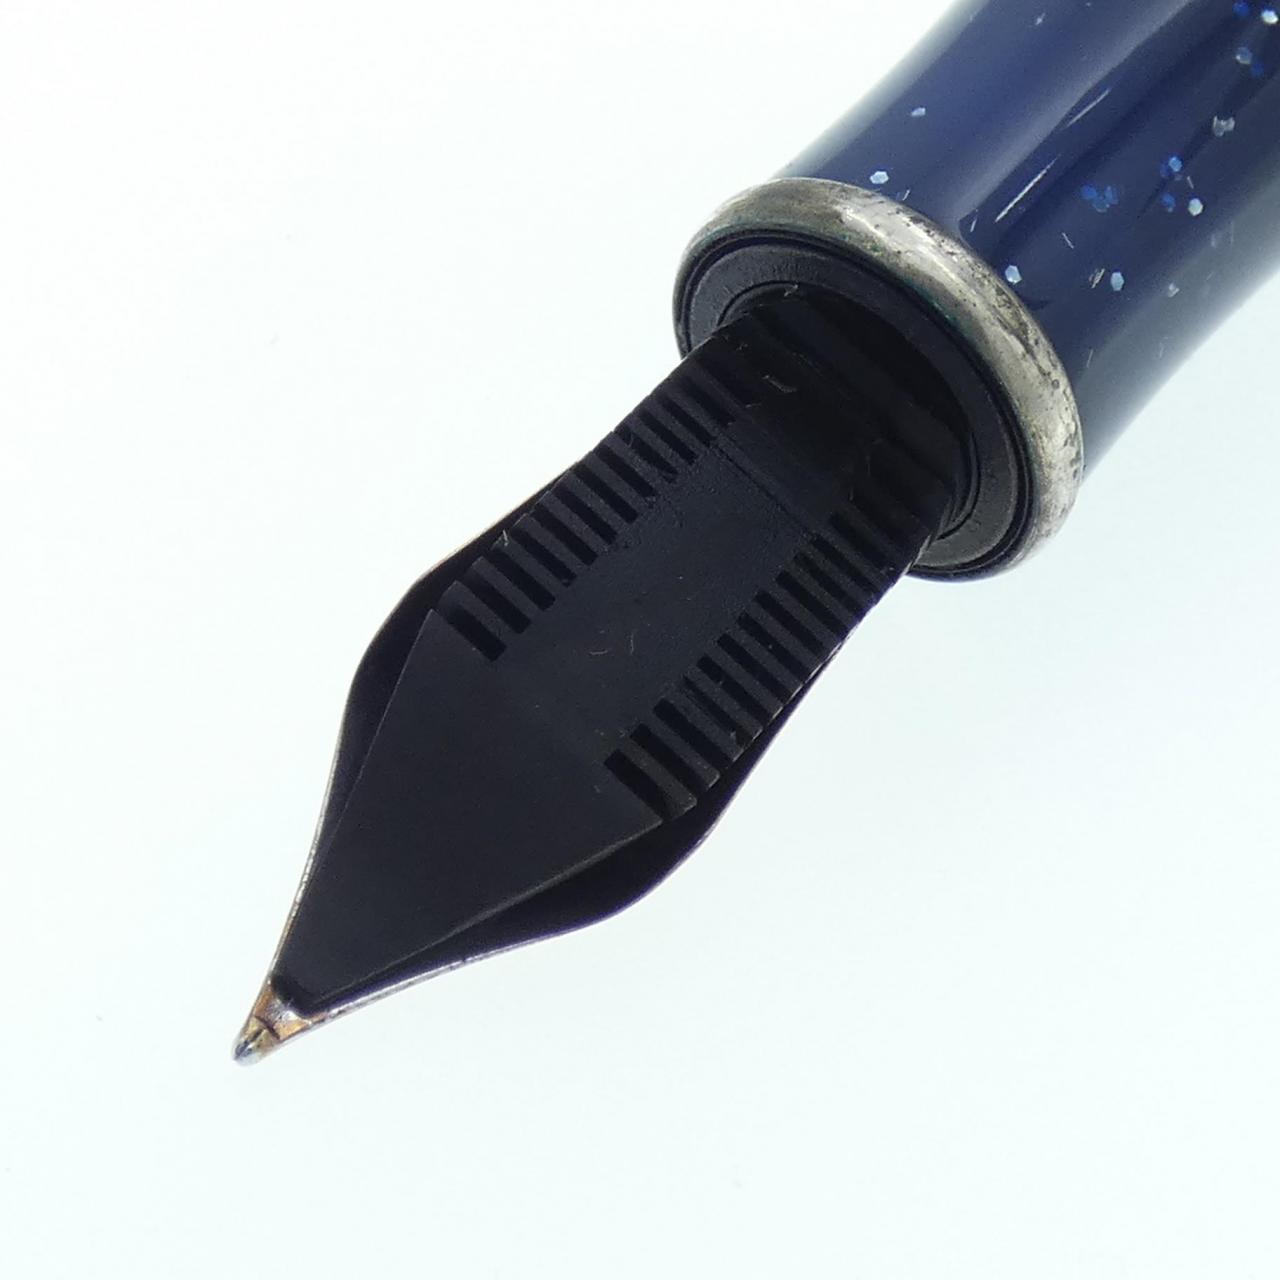 Monetegrappa 88 周年限量版钢笔